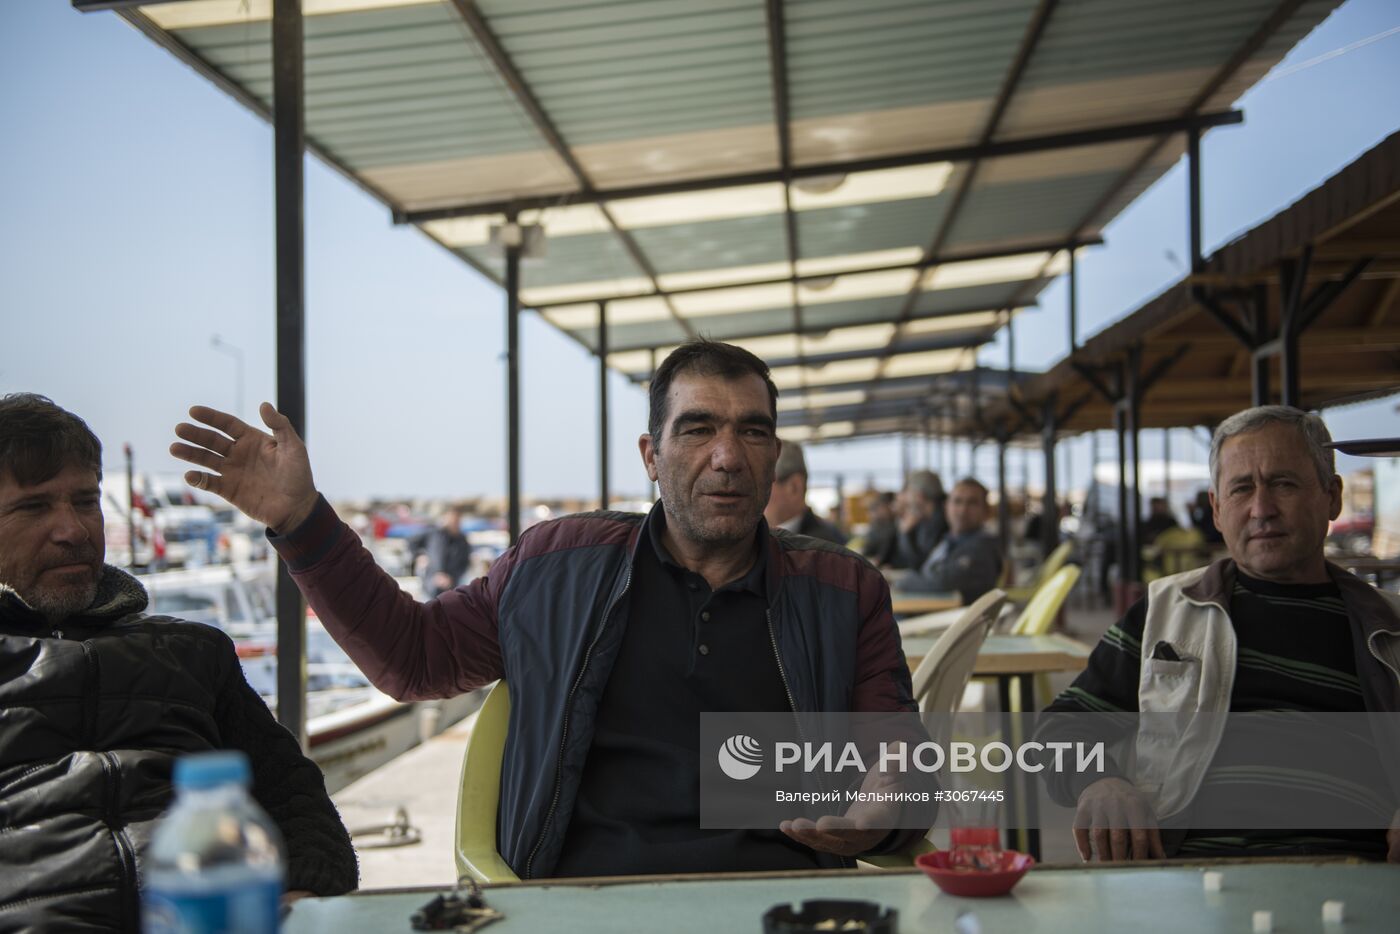 Сирийские беженцы в турецкой провинции Измир